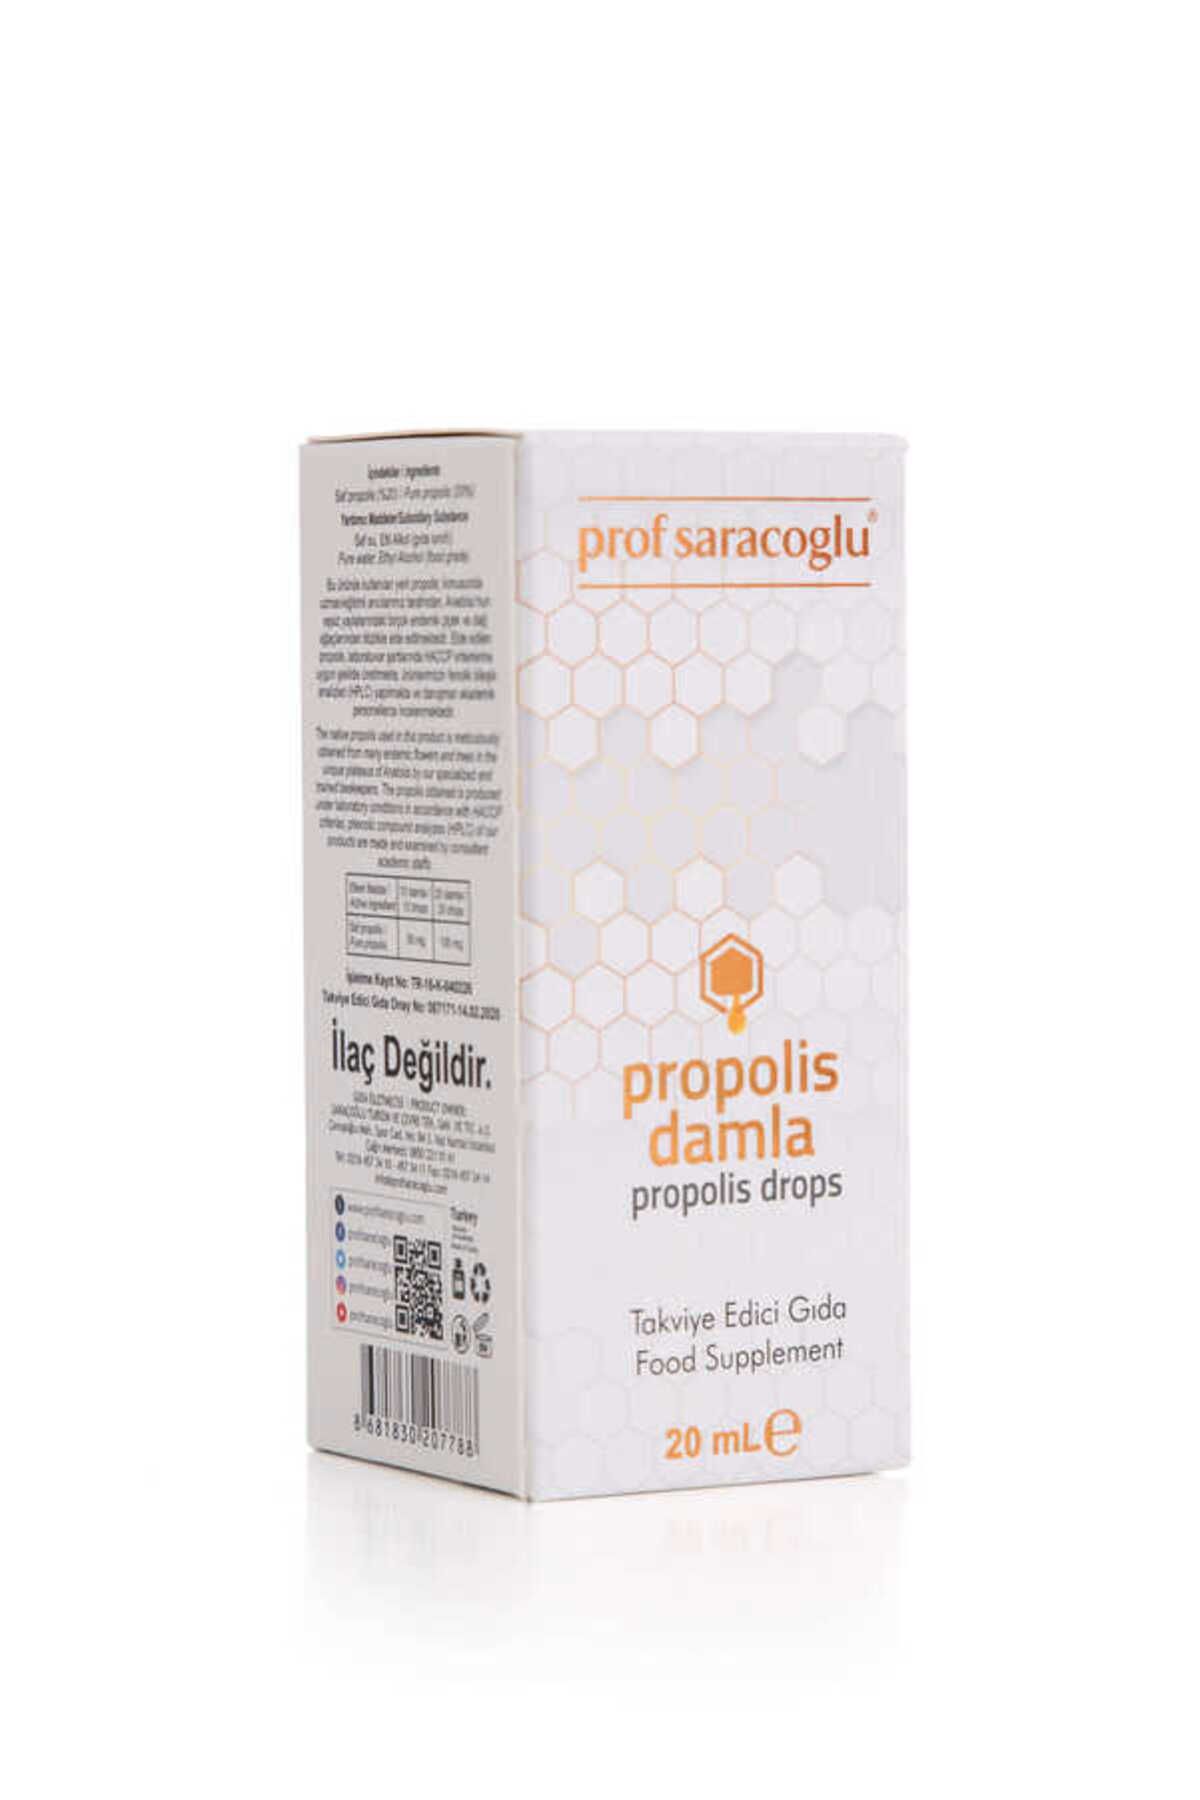 prof saracoglu Propolis - A Damla Takviye Edici Gıda